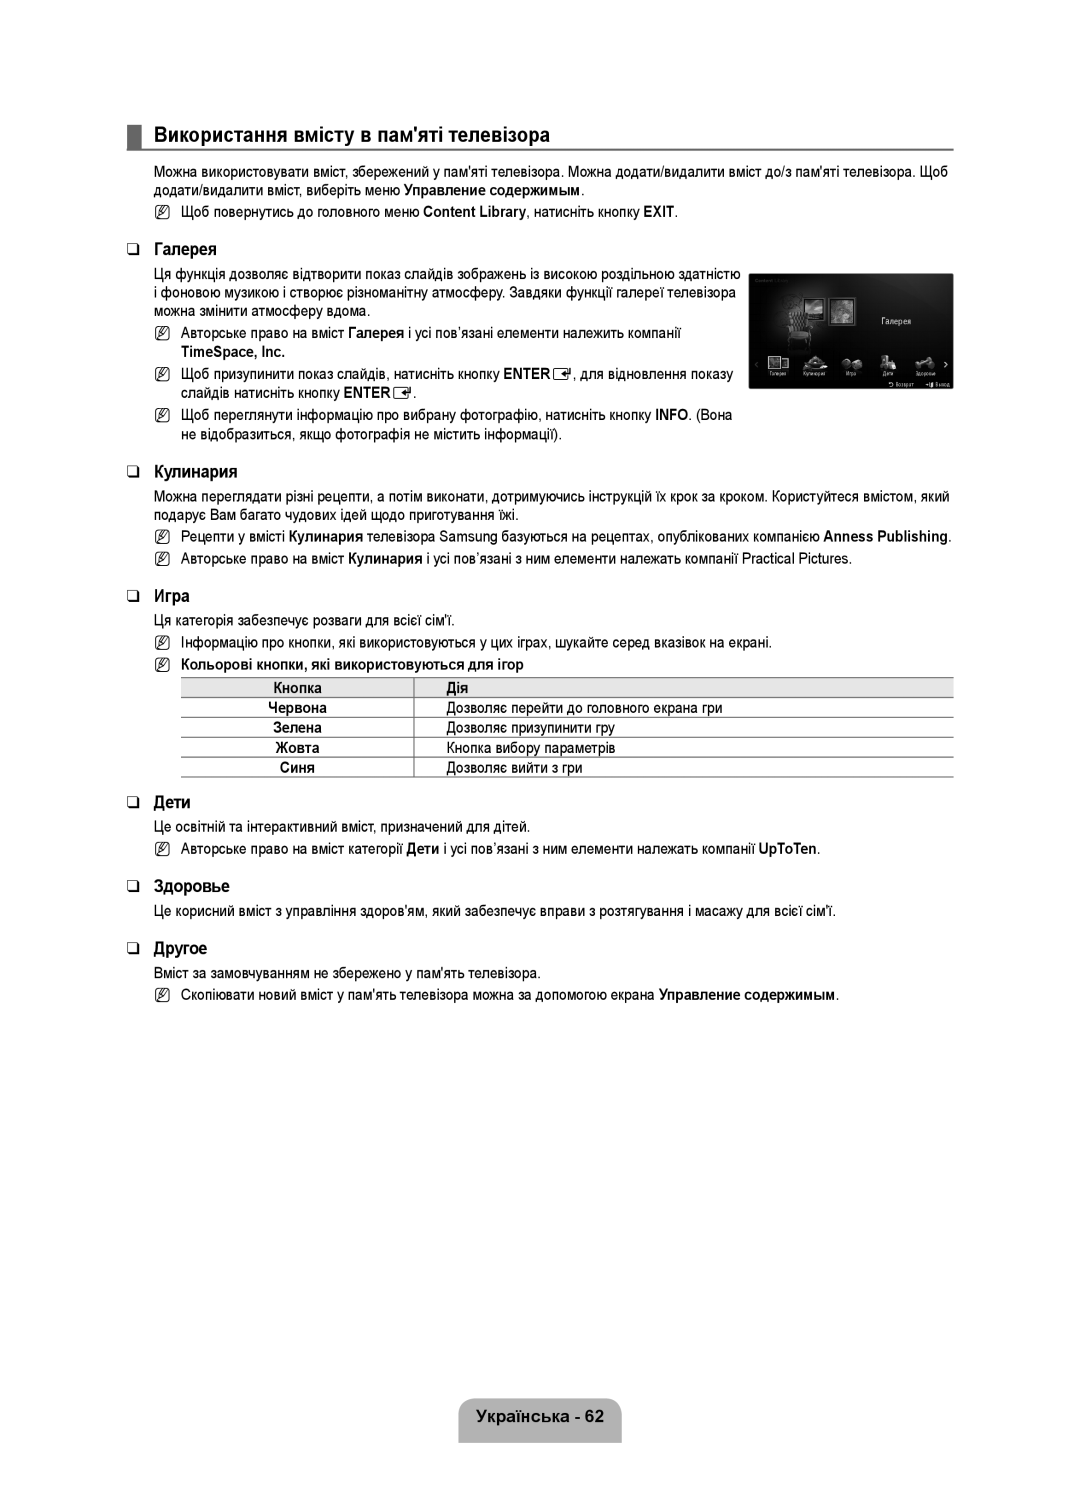 Samsung UE46B7020WWXXN manual Використання вмісту в памяті телевізора, Кольорові кнопки, які використовуються для ігор 